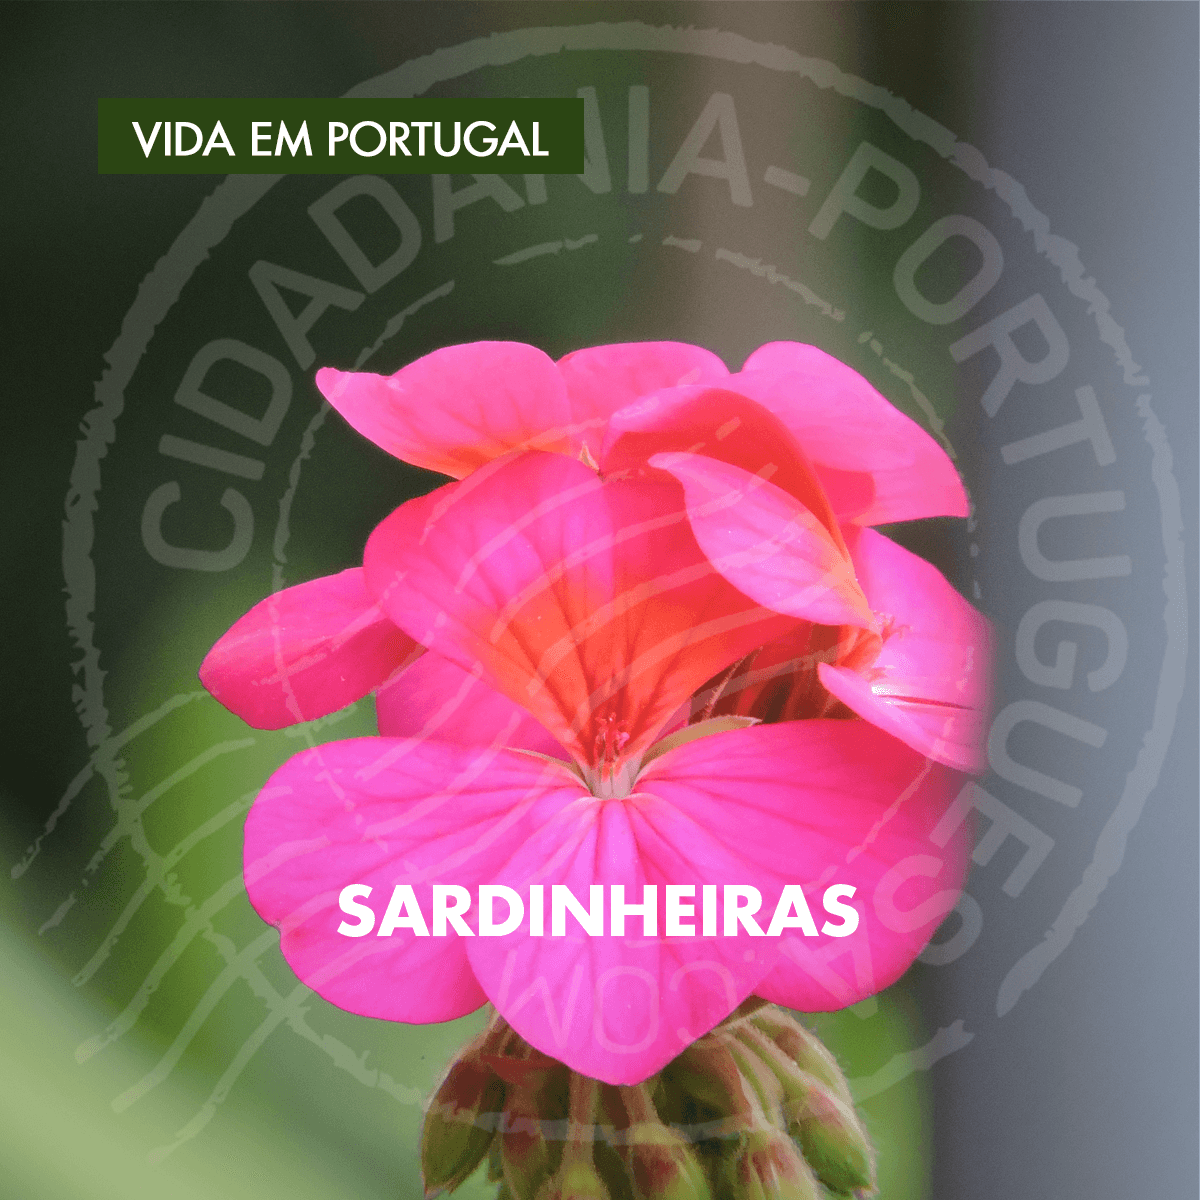 Sardinheiras | Cidadania Portuguesa